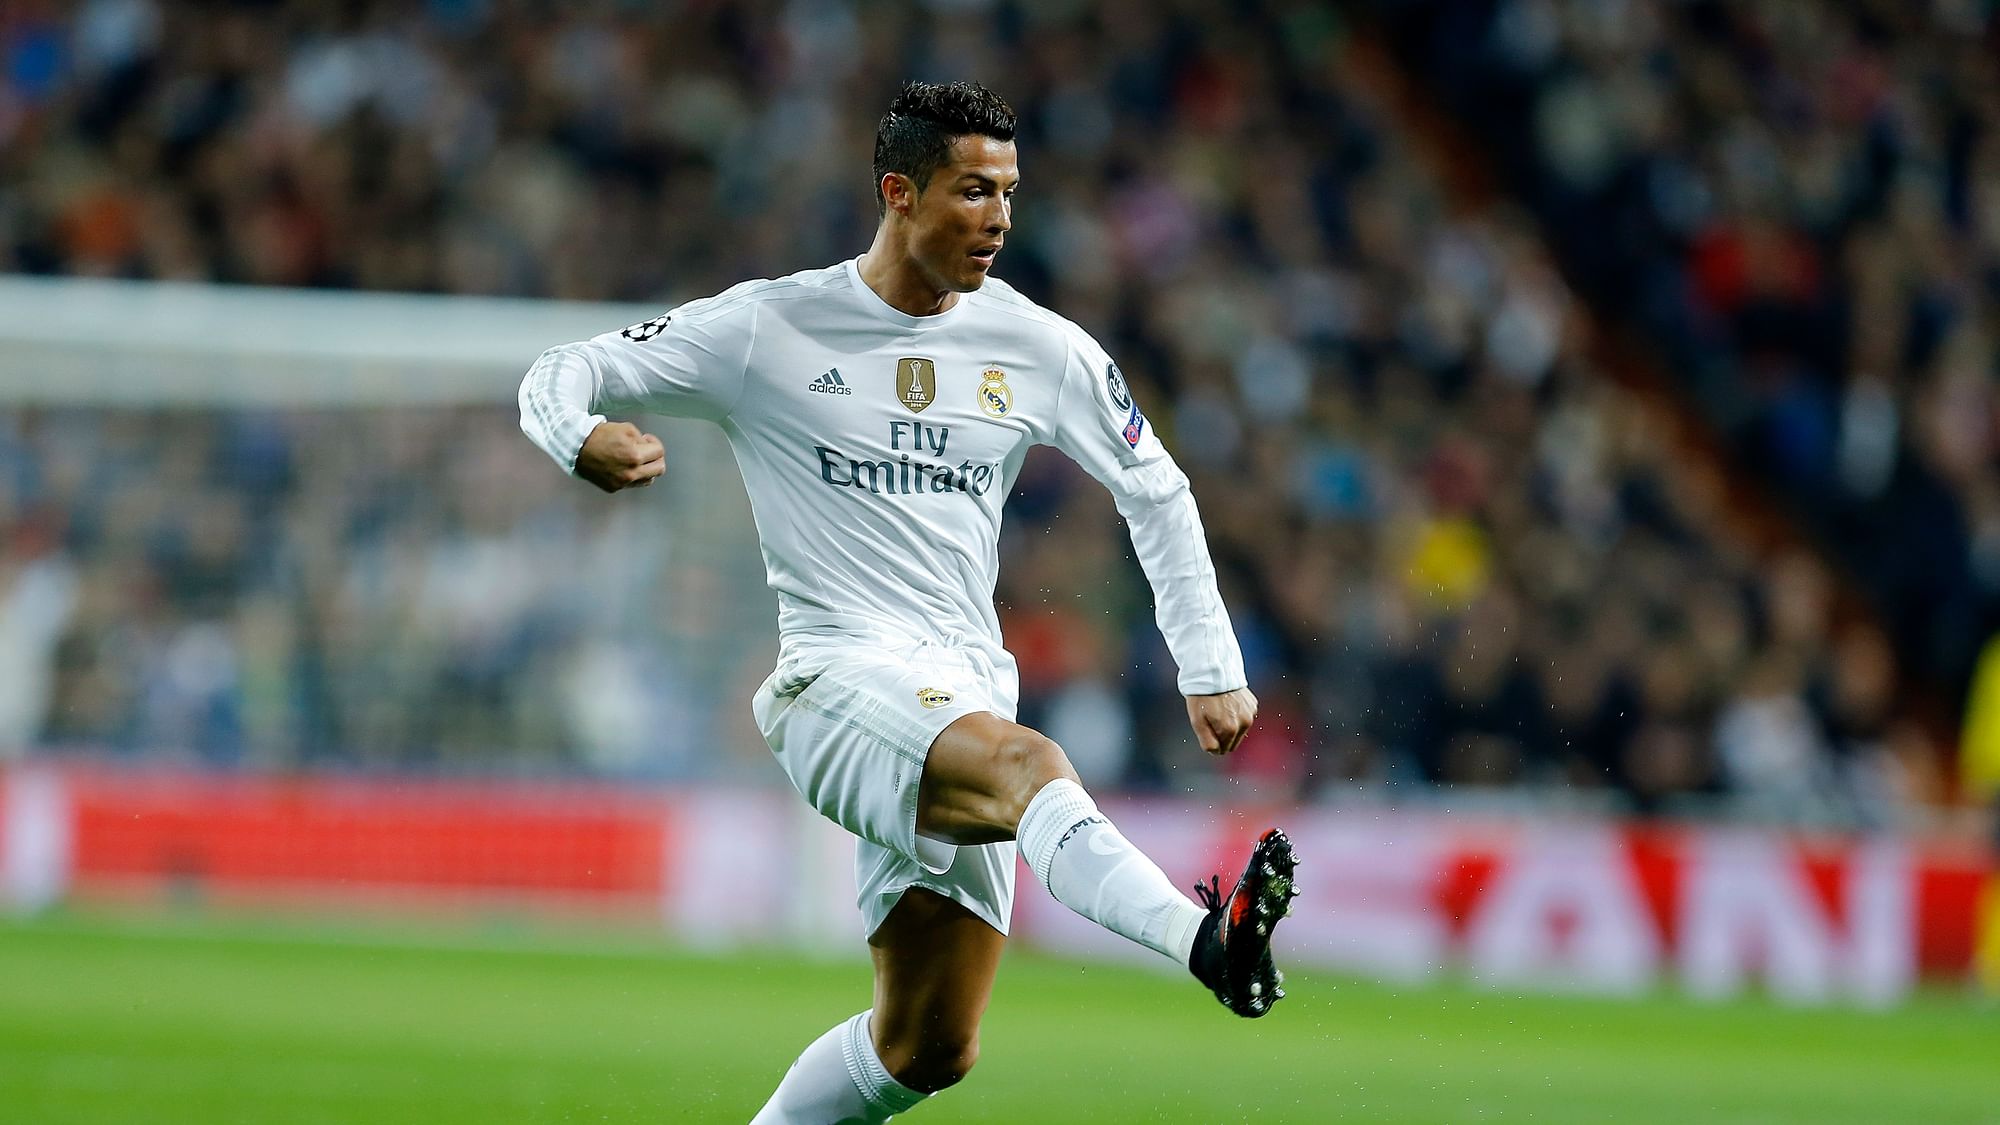 File photo of Cristiano Ronaldo. (Photo: AP)